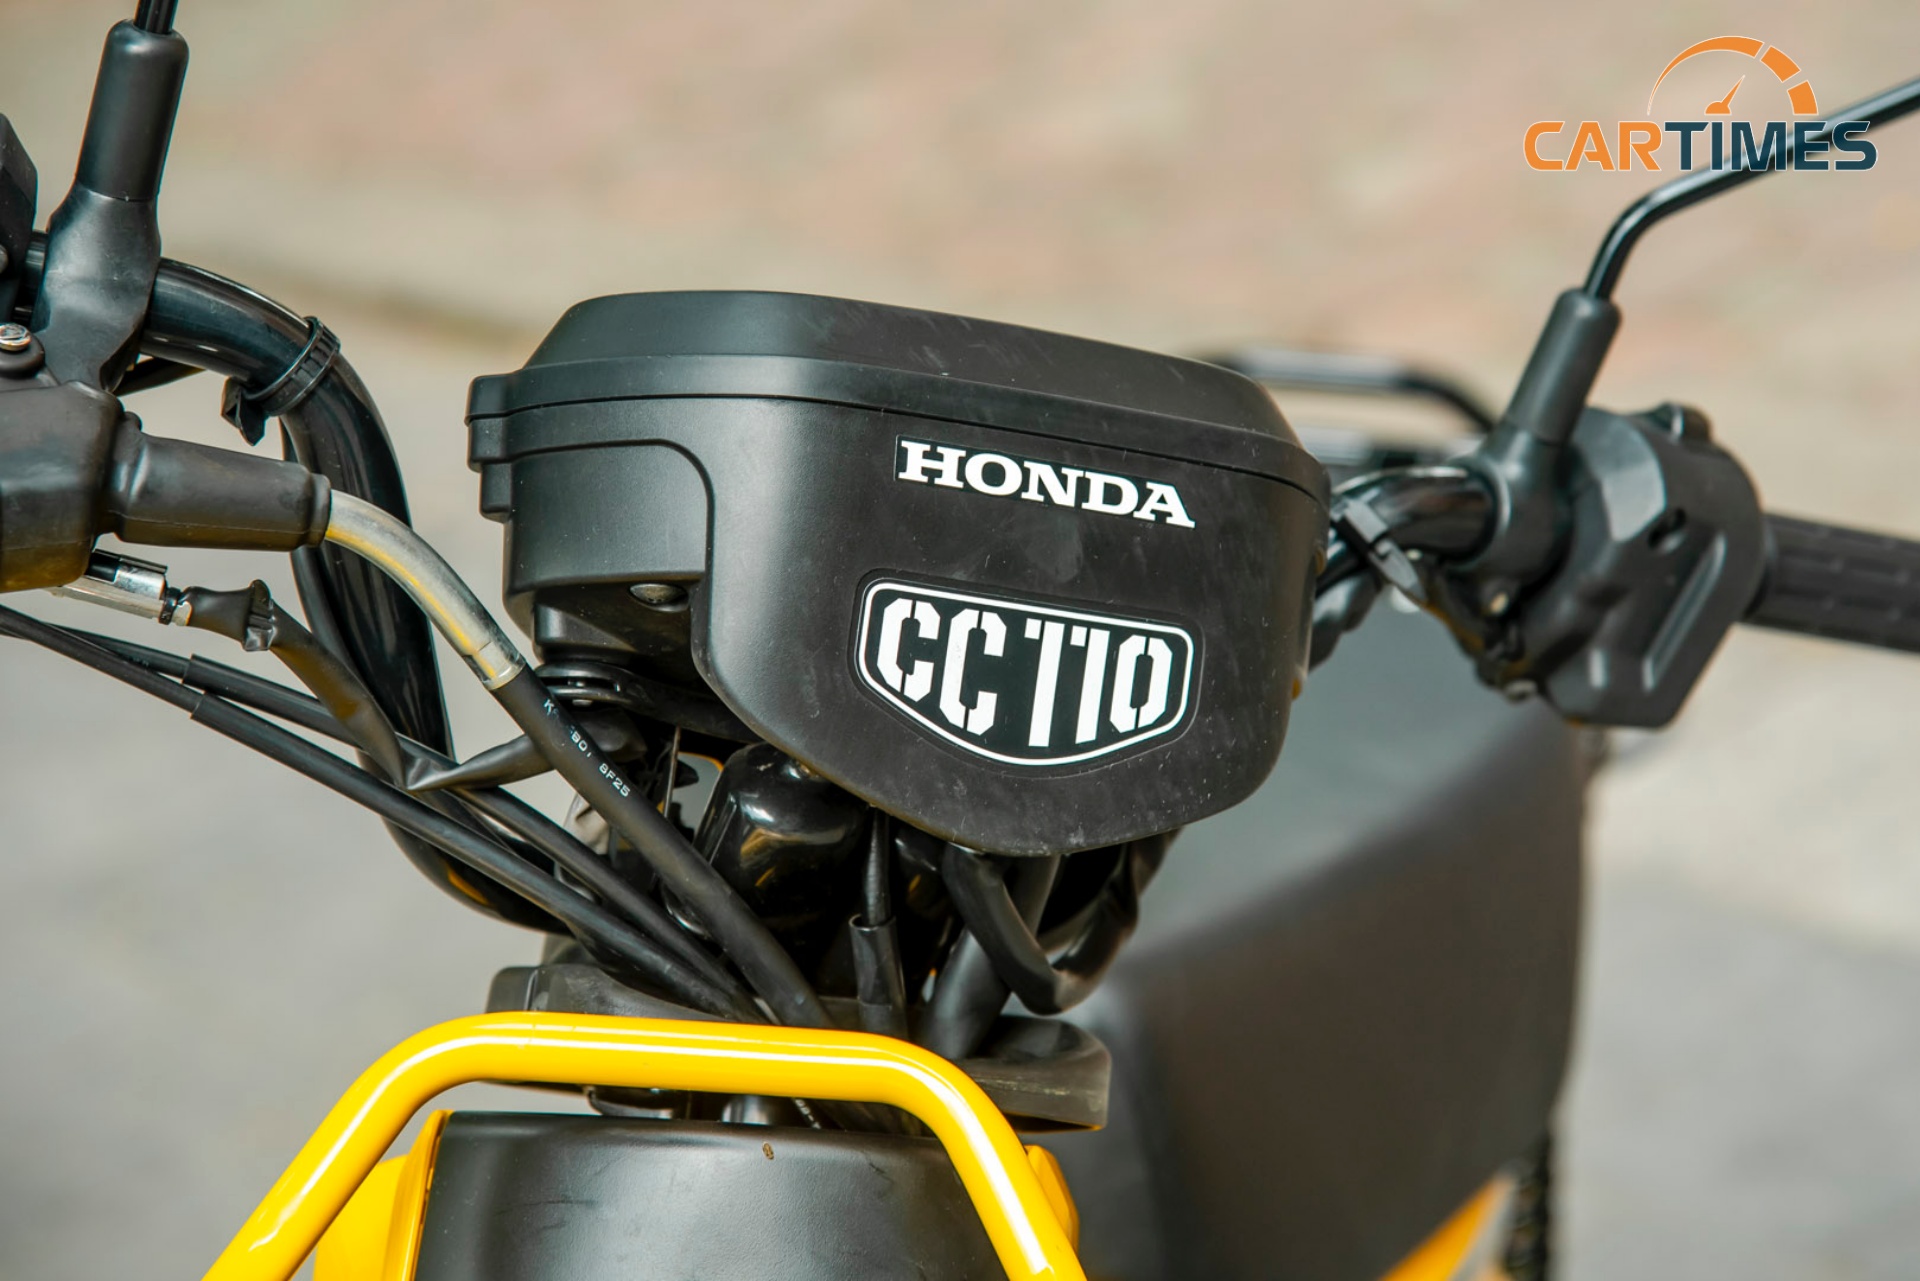 Phần đầu xe Honda Cross Cub với logo CC110